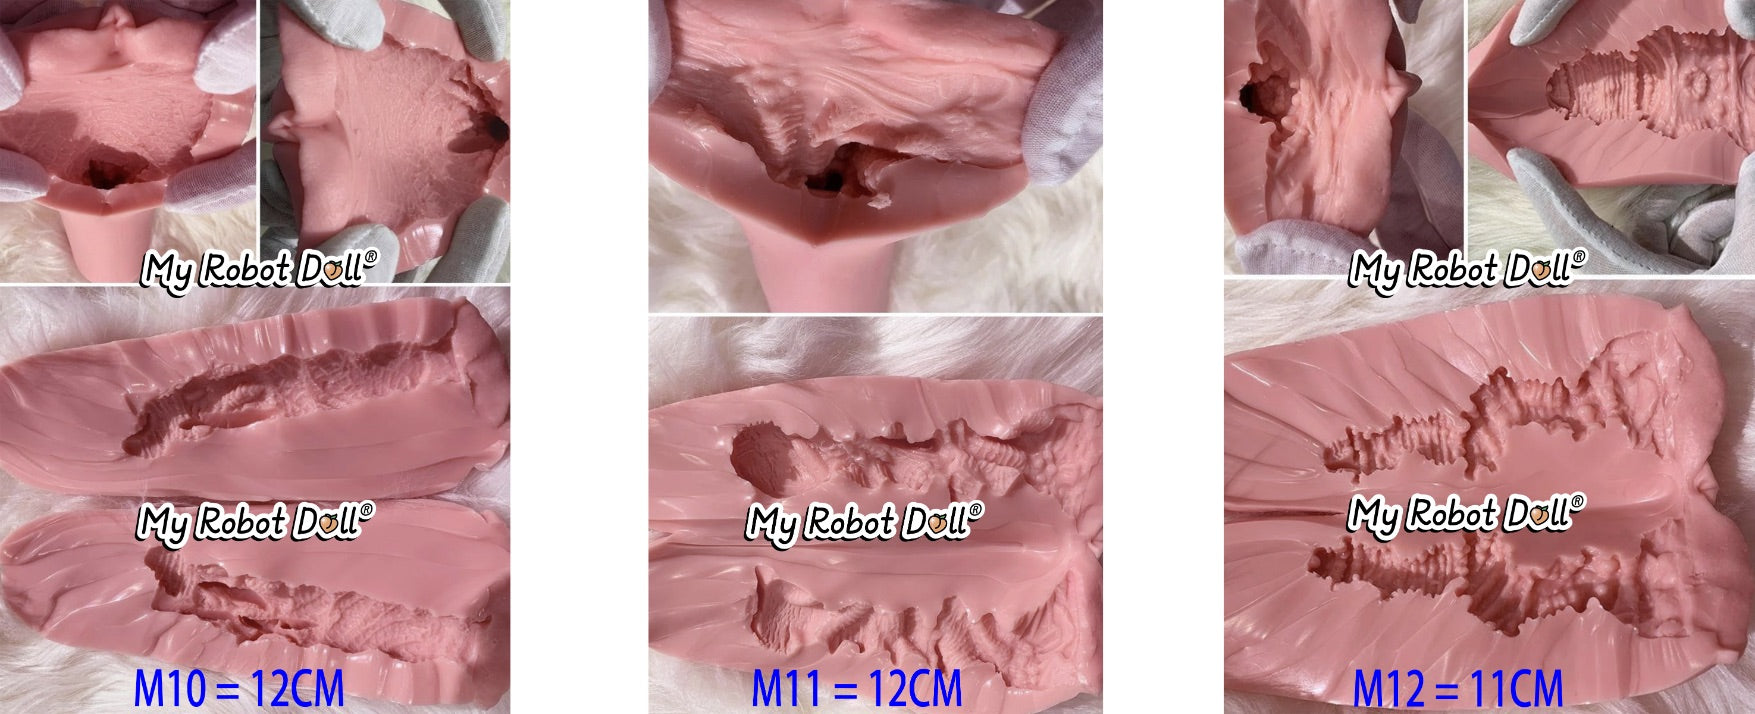 M10, M11, M12 Vagina Insert Textures